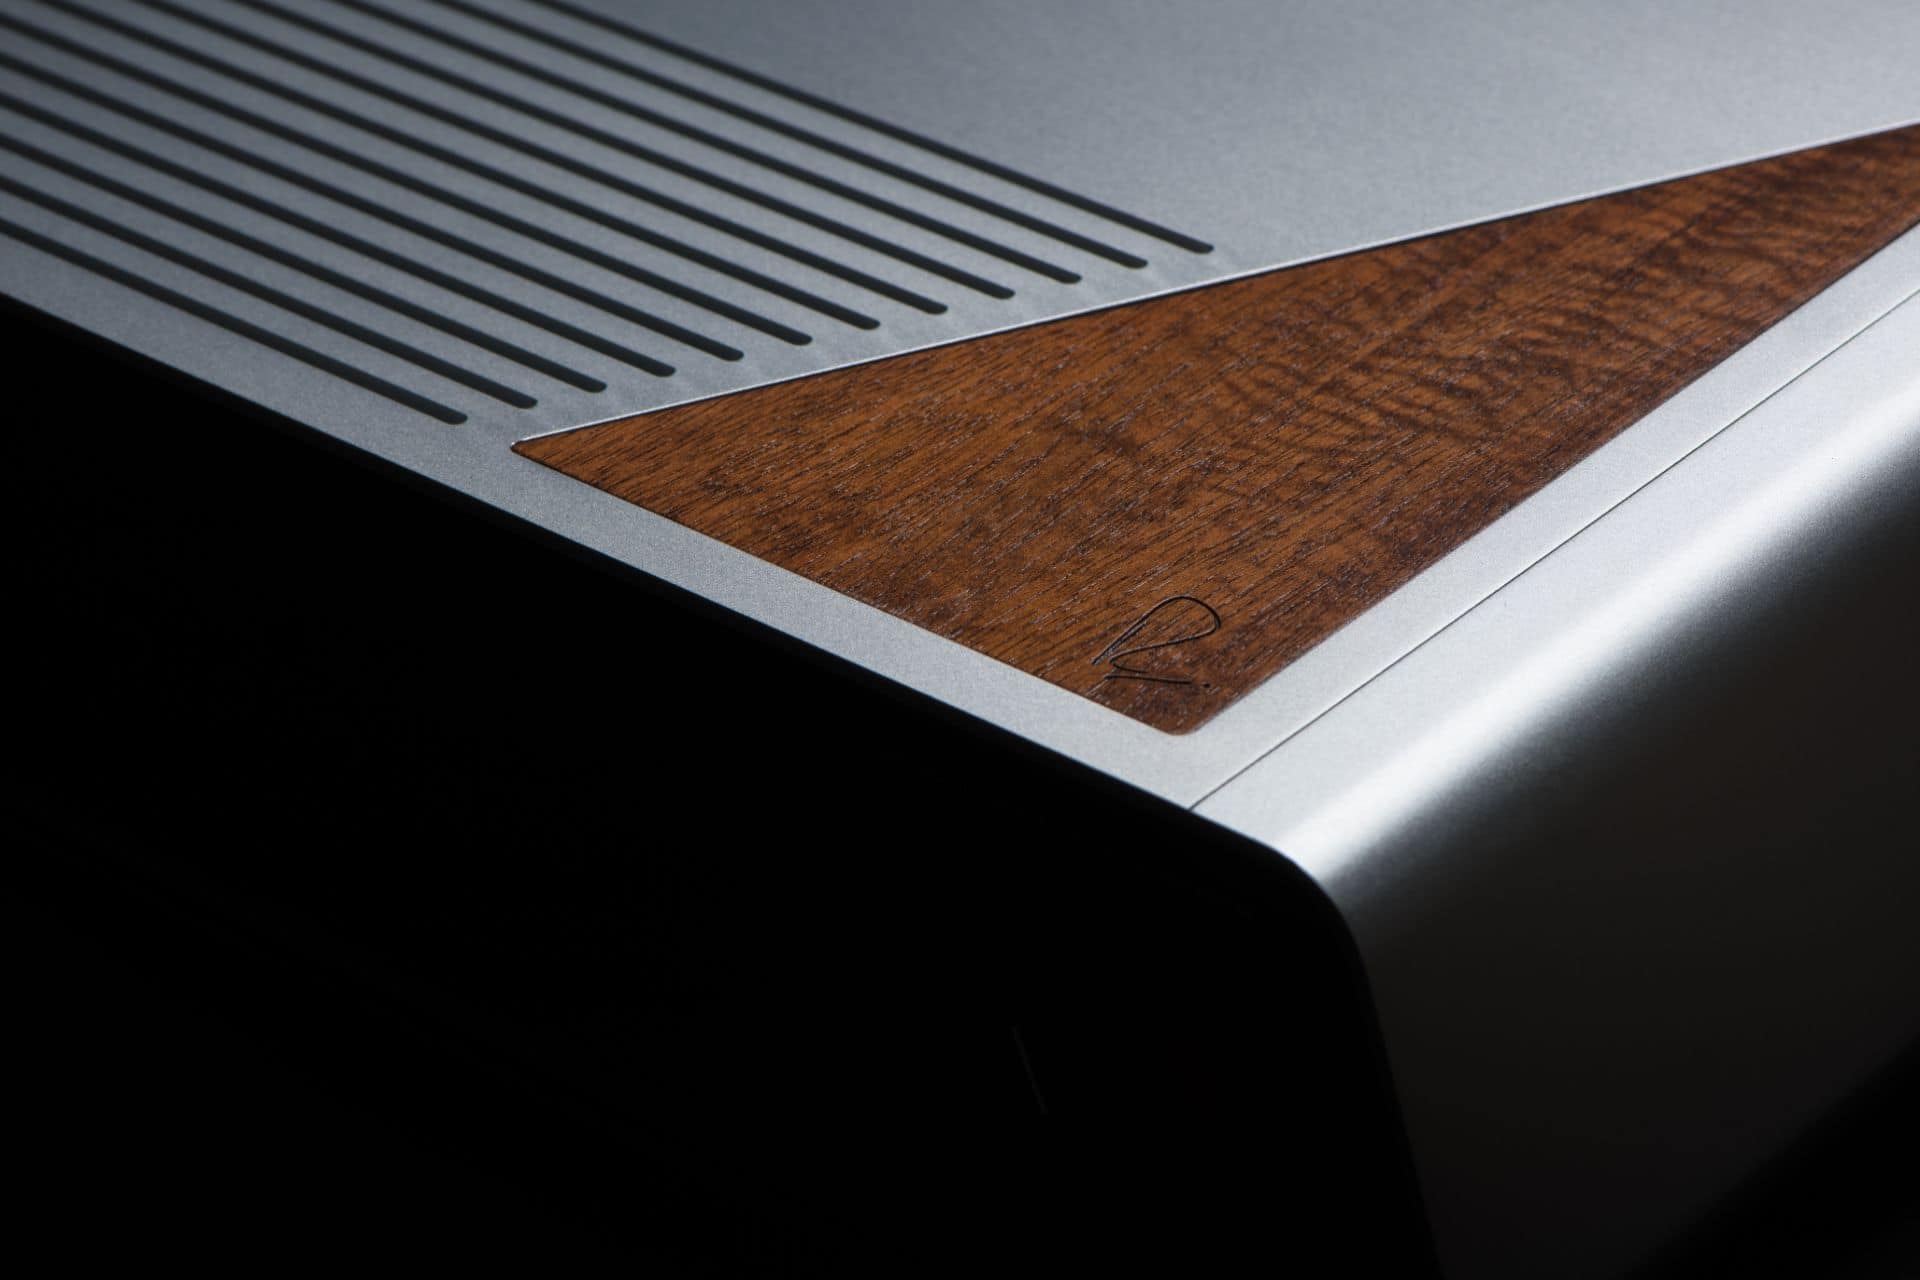 Close up of the Rupert Neve Design DAC top wood insert